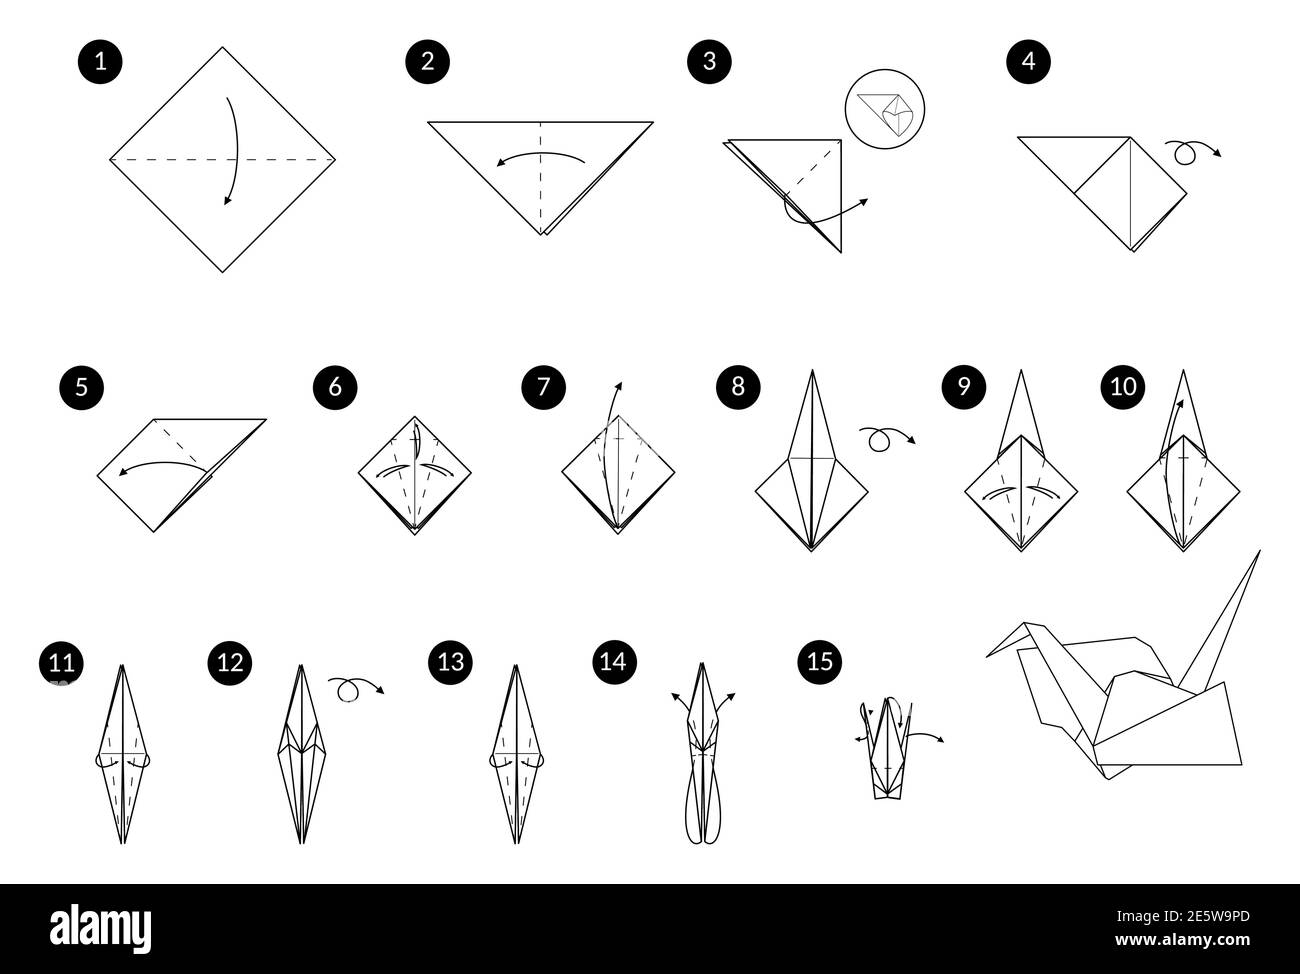 Grulla de origami Imágenes vectoriales de stock - Alamy